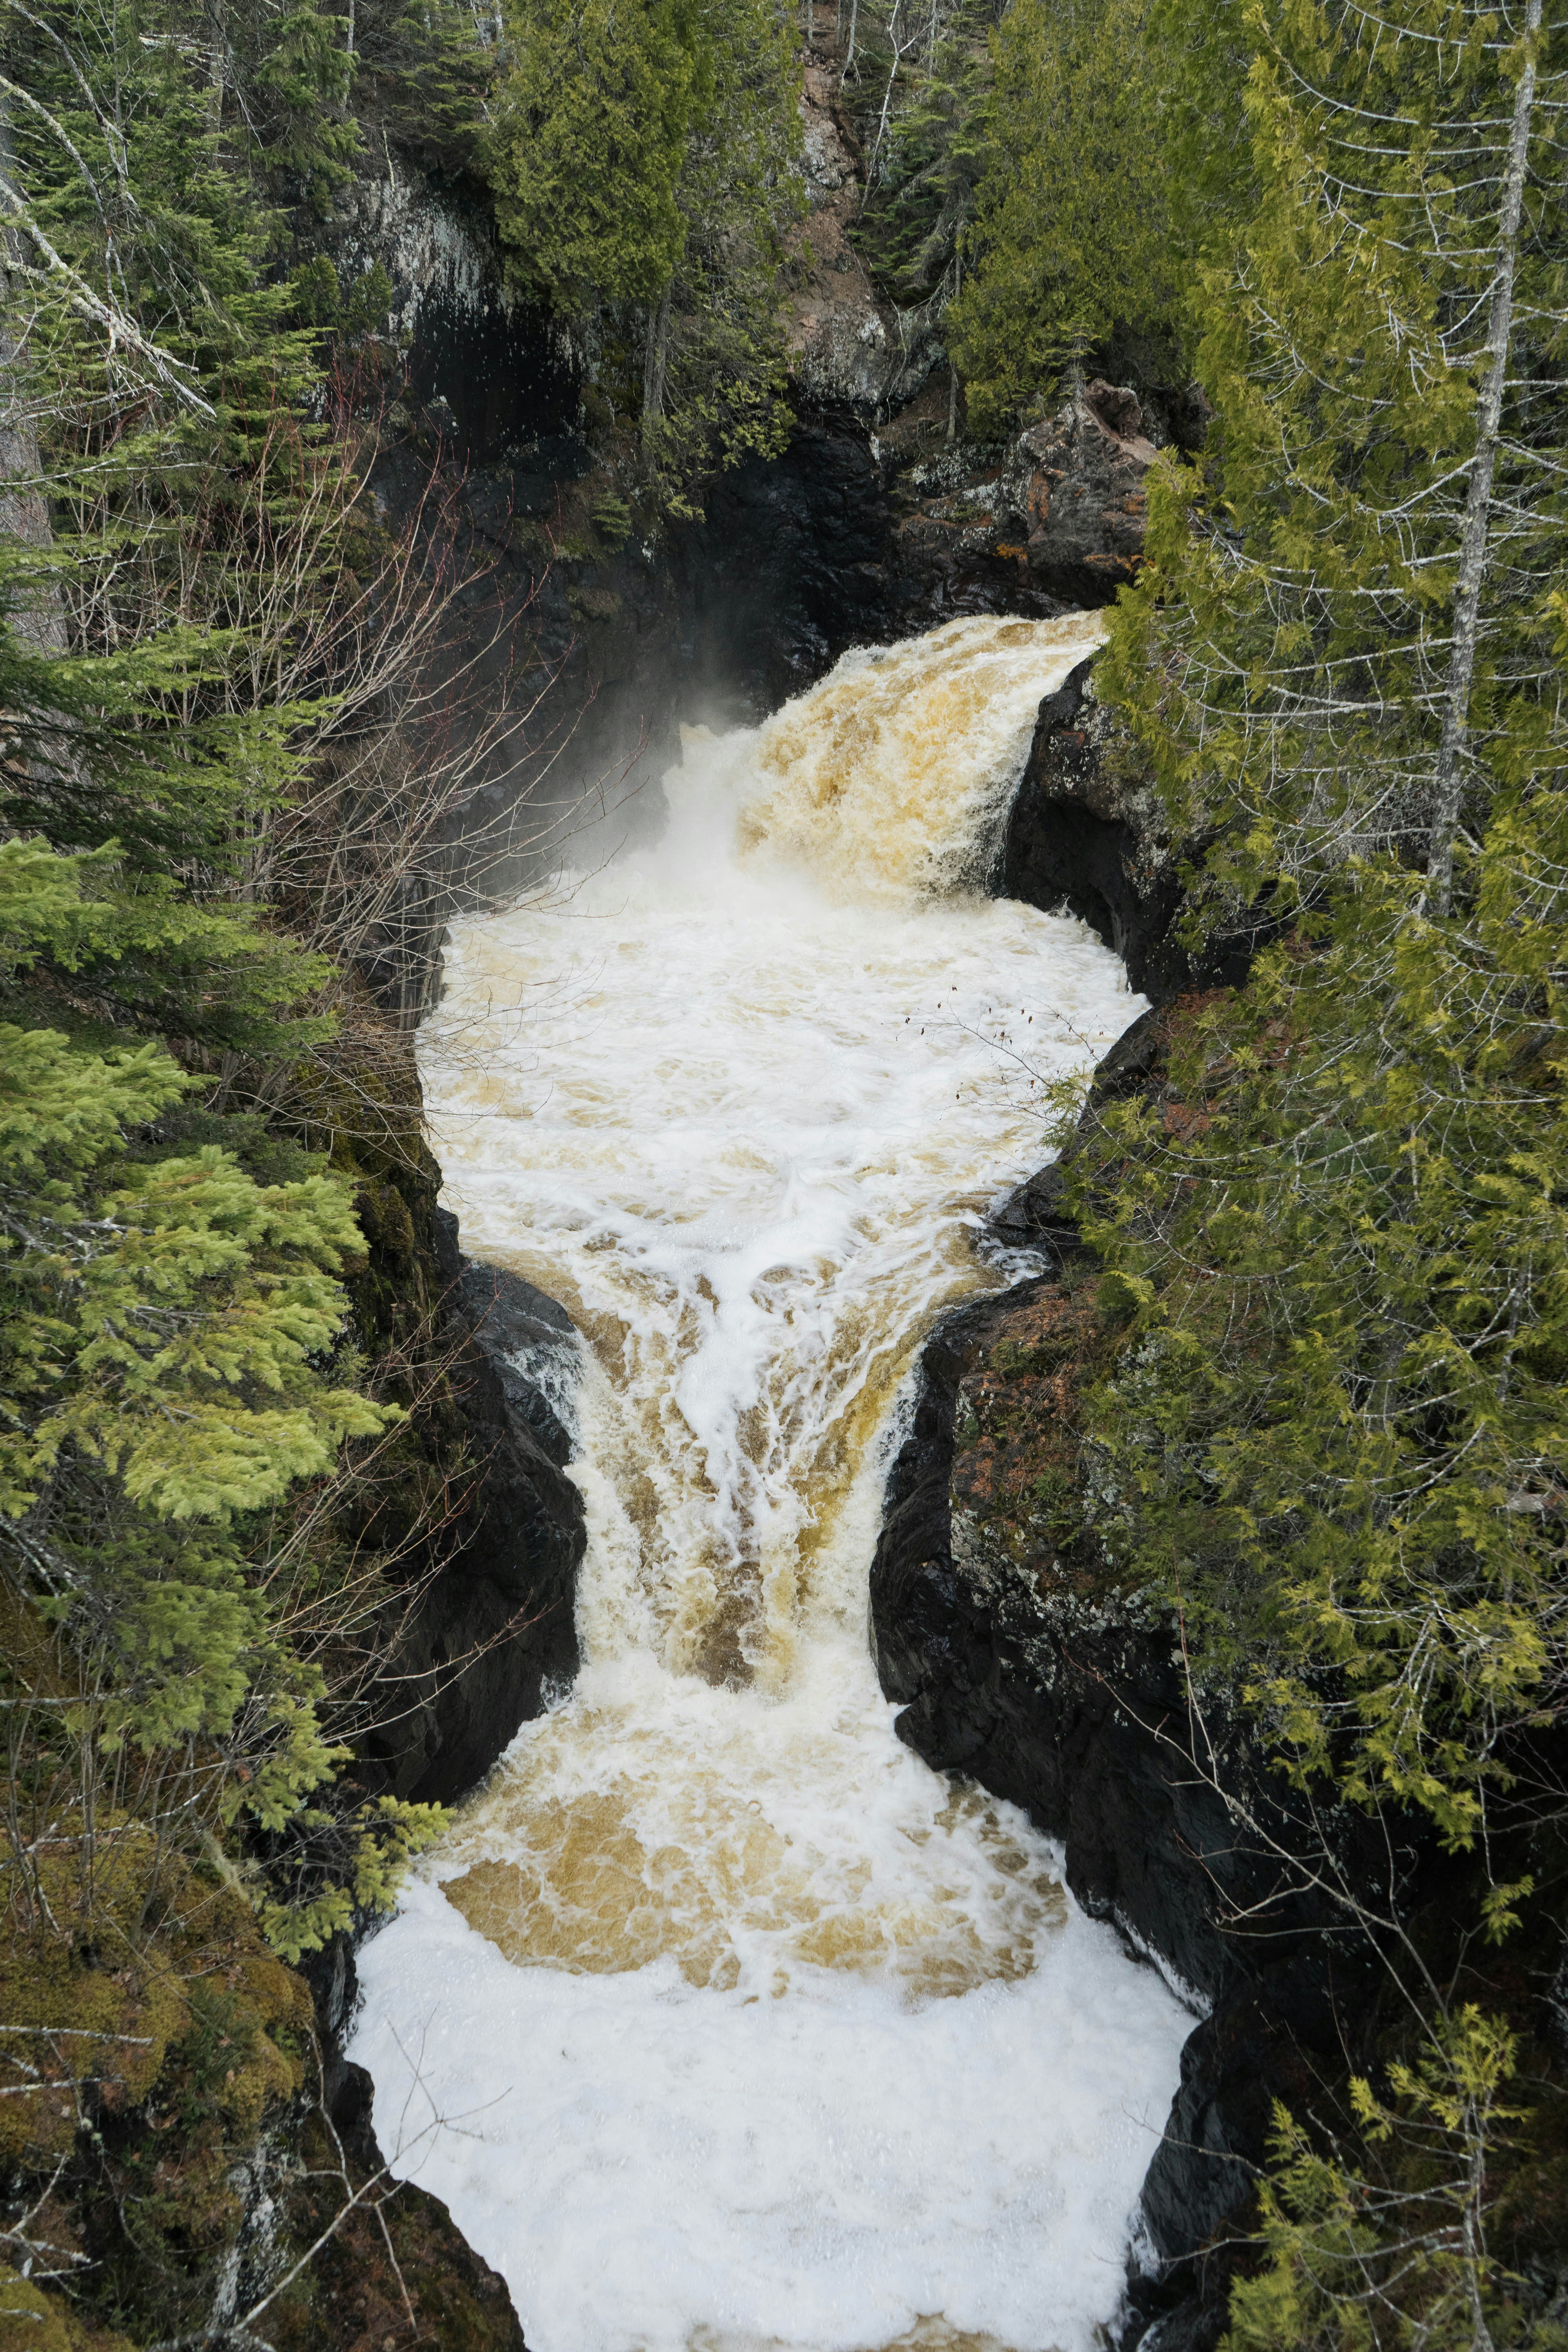 waterfalls during daytime